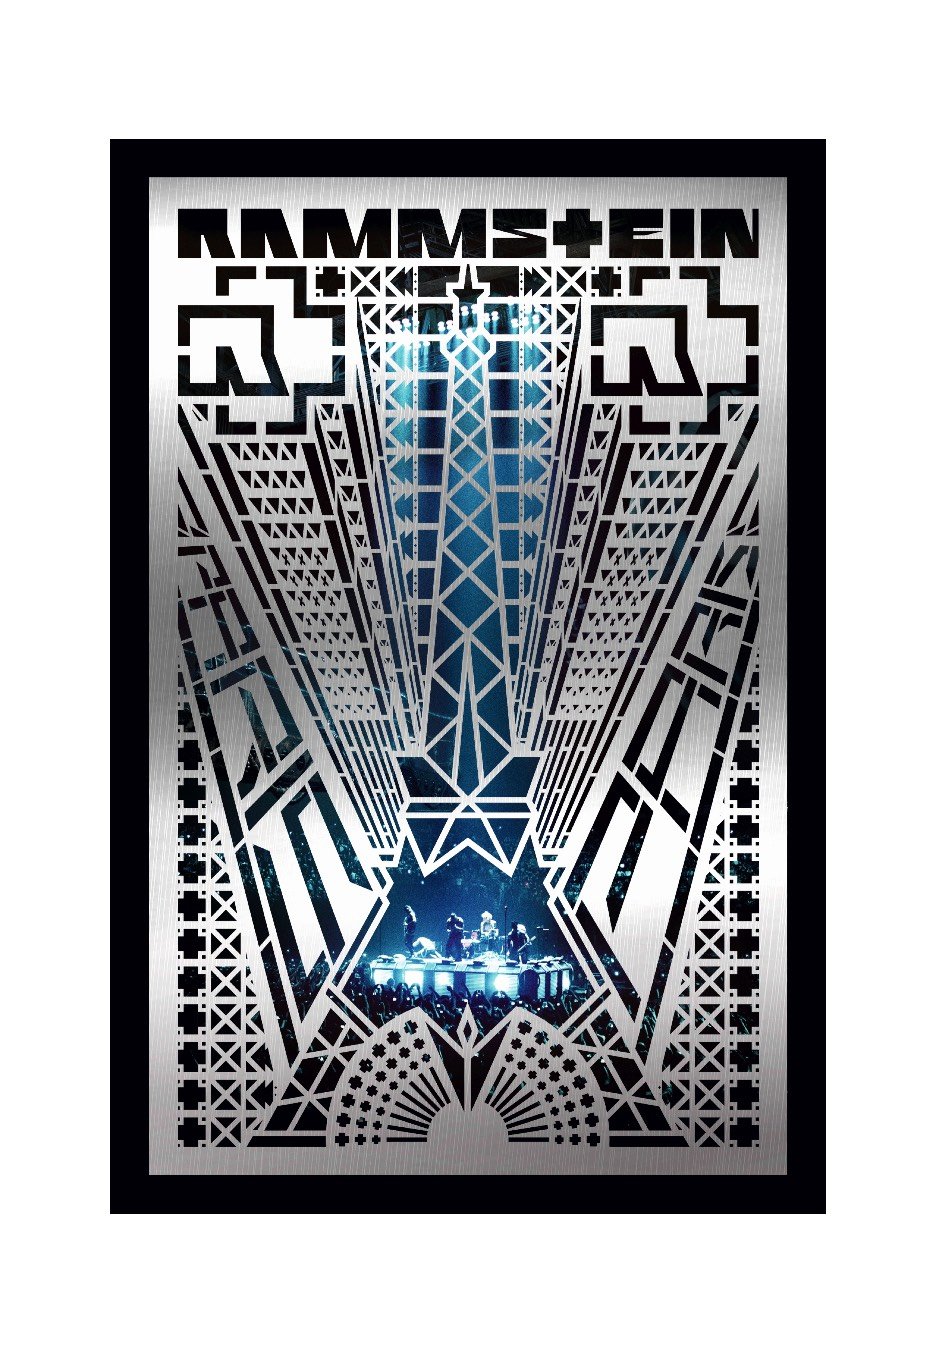 Rammstein - Rammstein: Paris (Special Edt.) - 2 CD + DVD